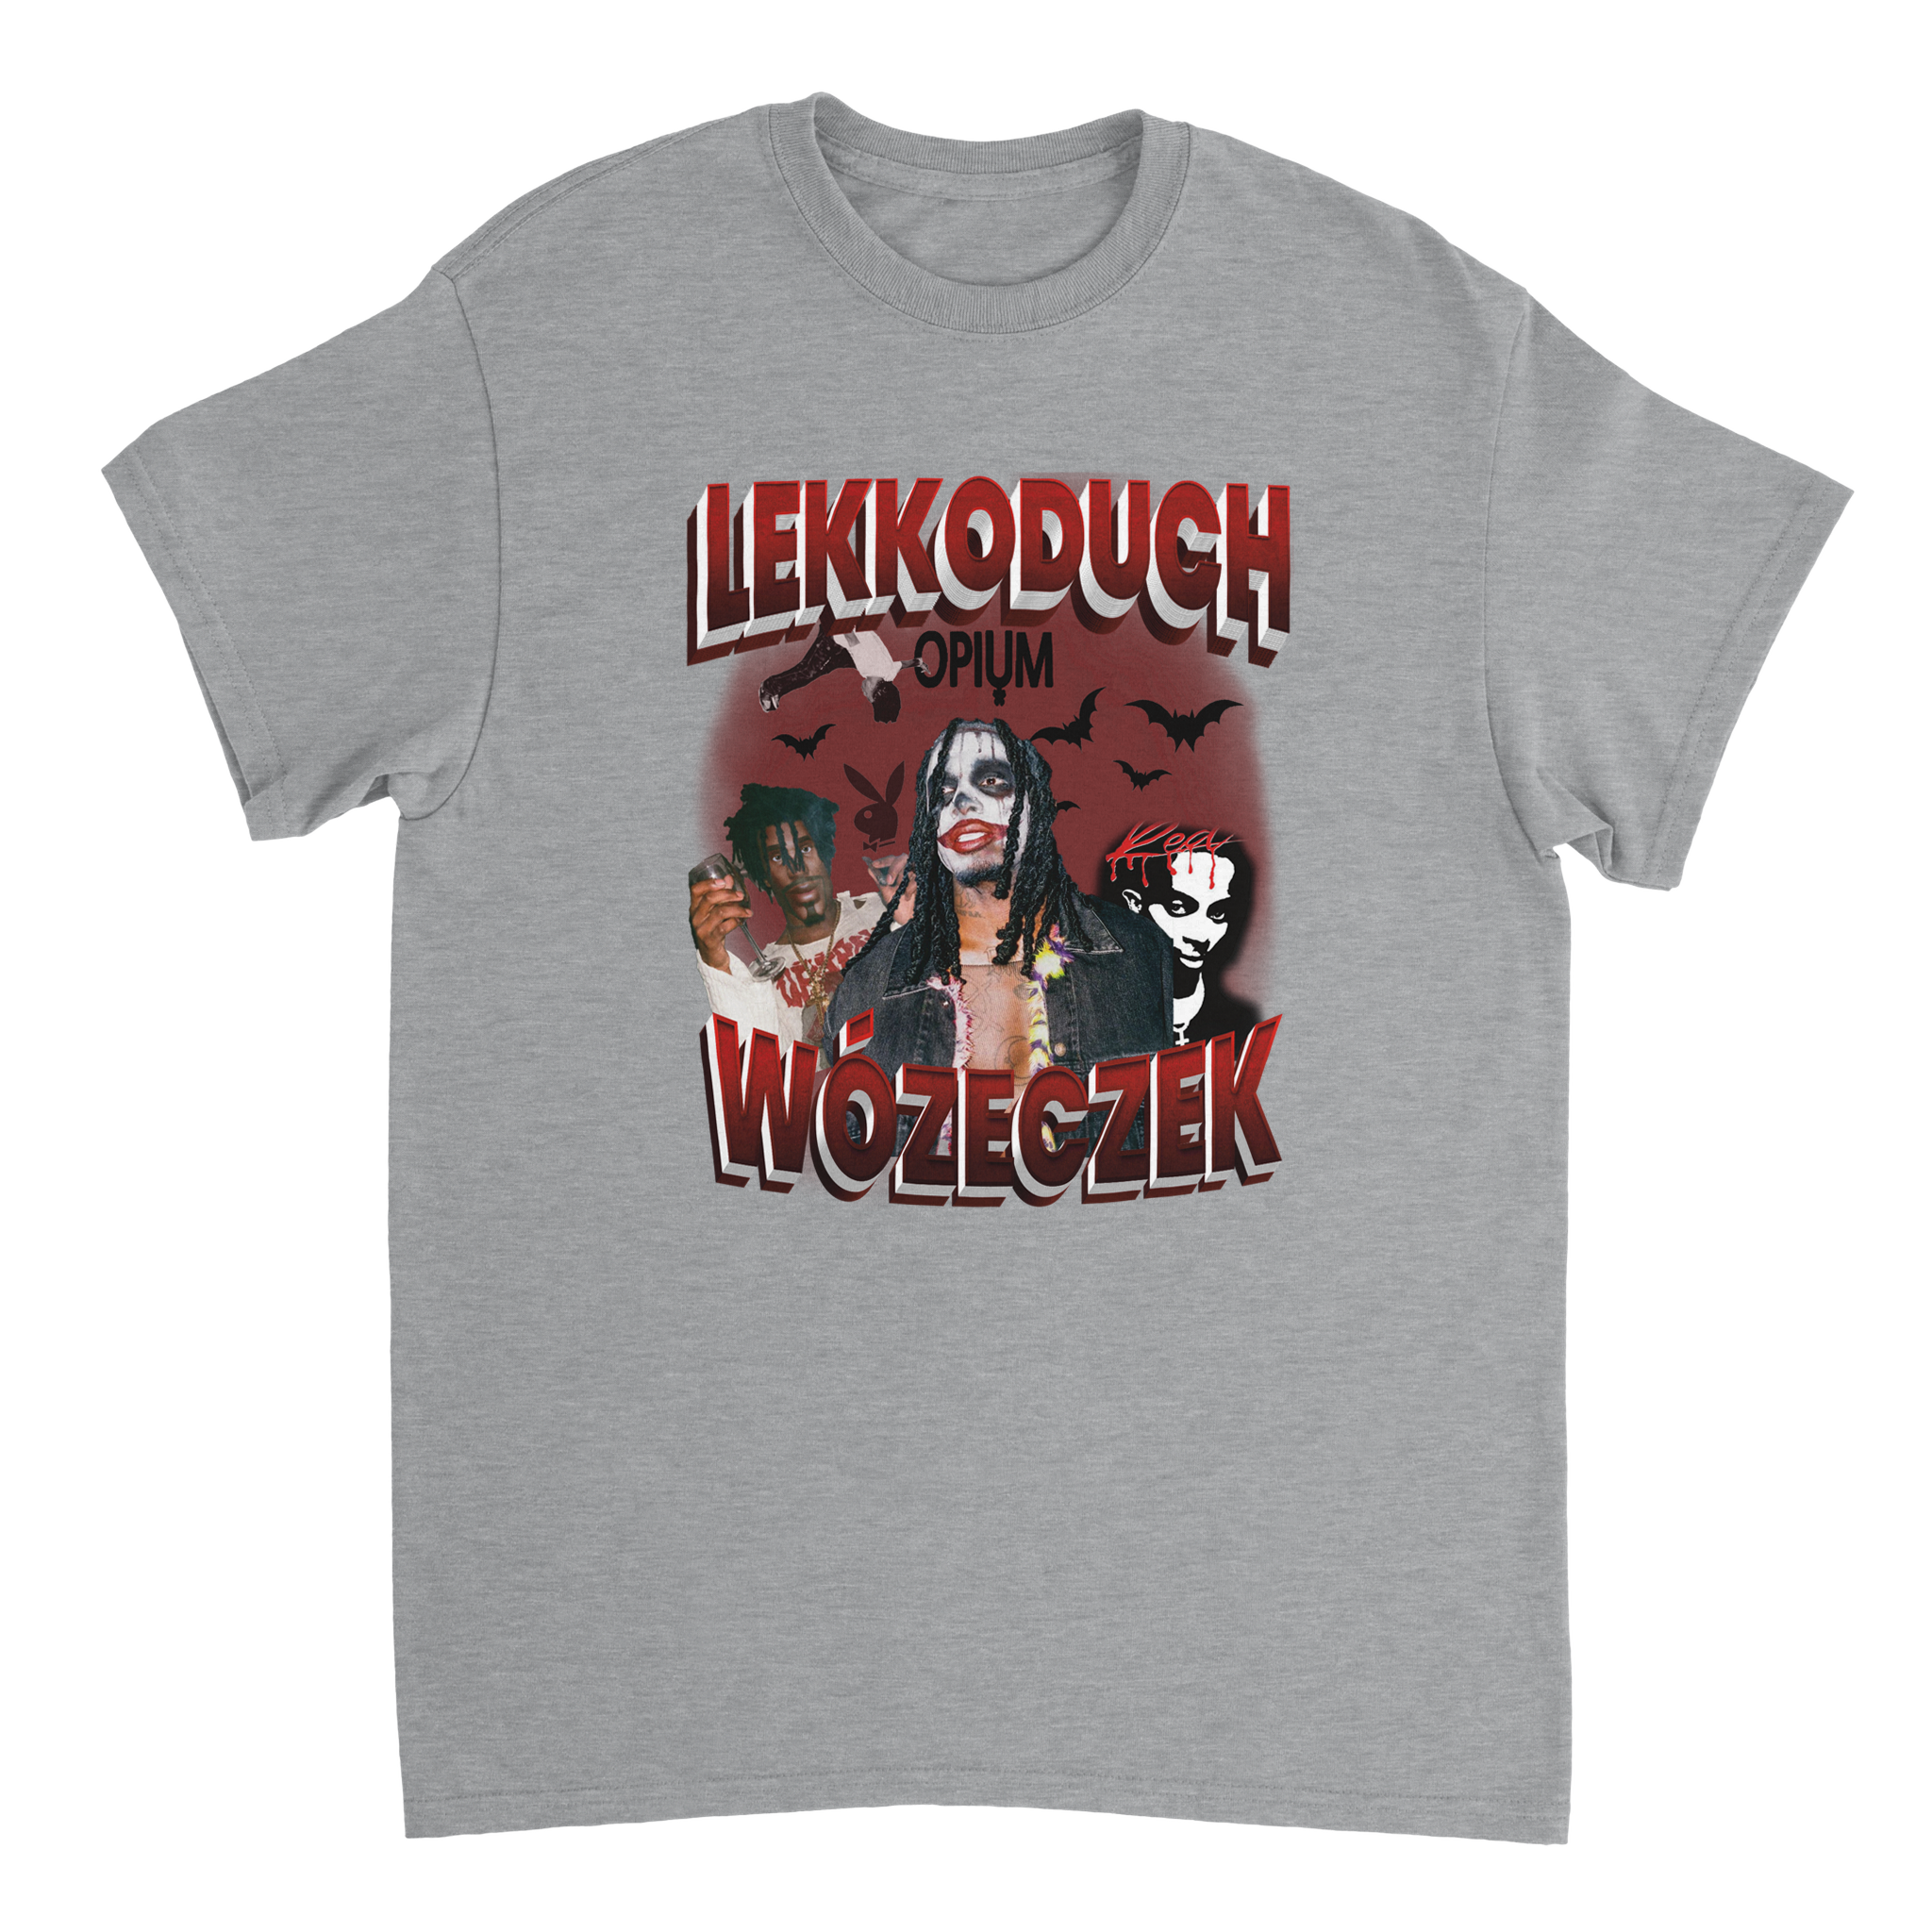 Lekkoduch Wózeczek T-shirt